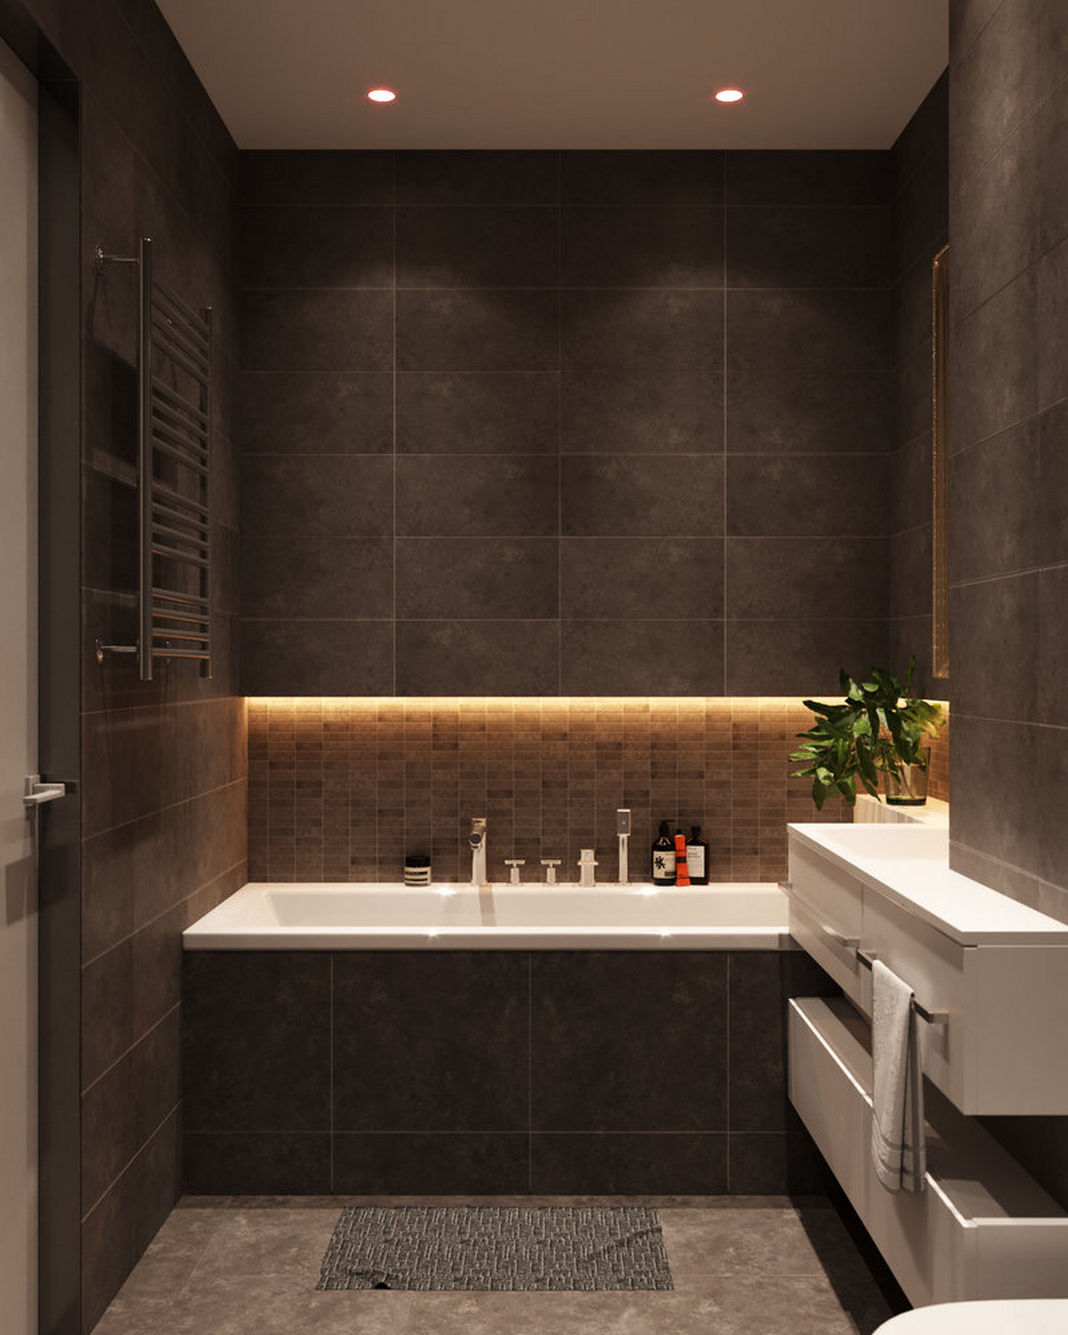 Fürdőszoba - sötét szürkésbarna falburkolat, fürdőkád, LED hangulatvilágítás, fehér bútor, mozaik